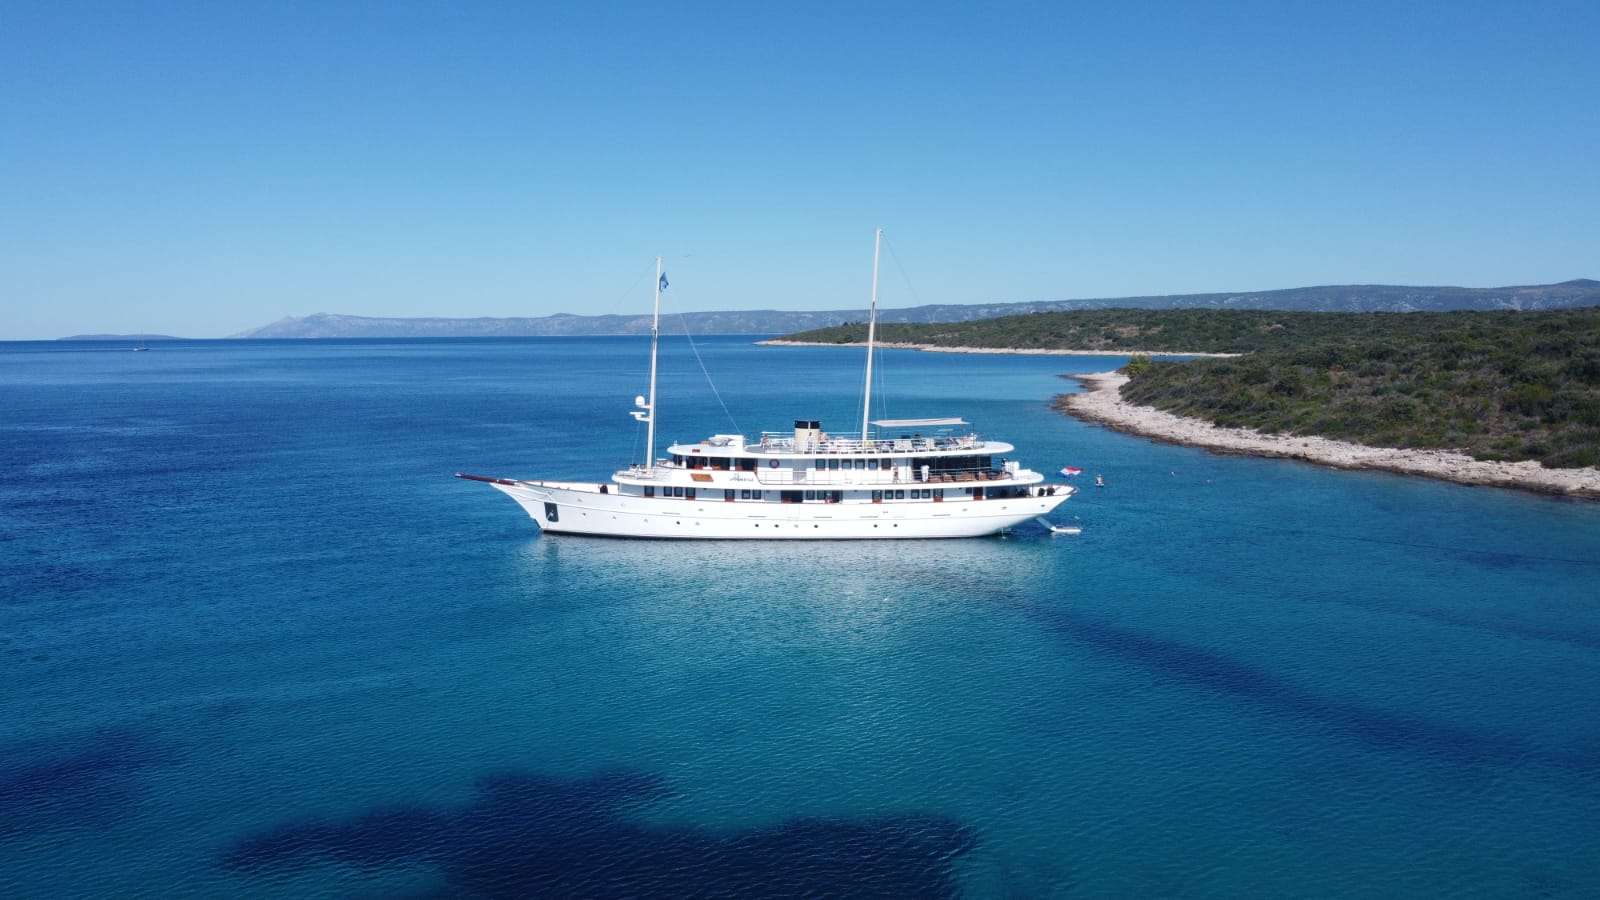 Bellezza - Yacht Charter Skradin & Boat hire in Croatia 3